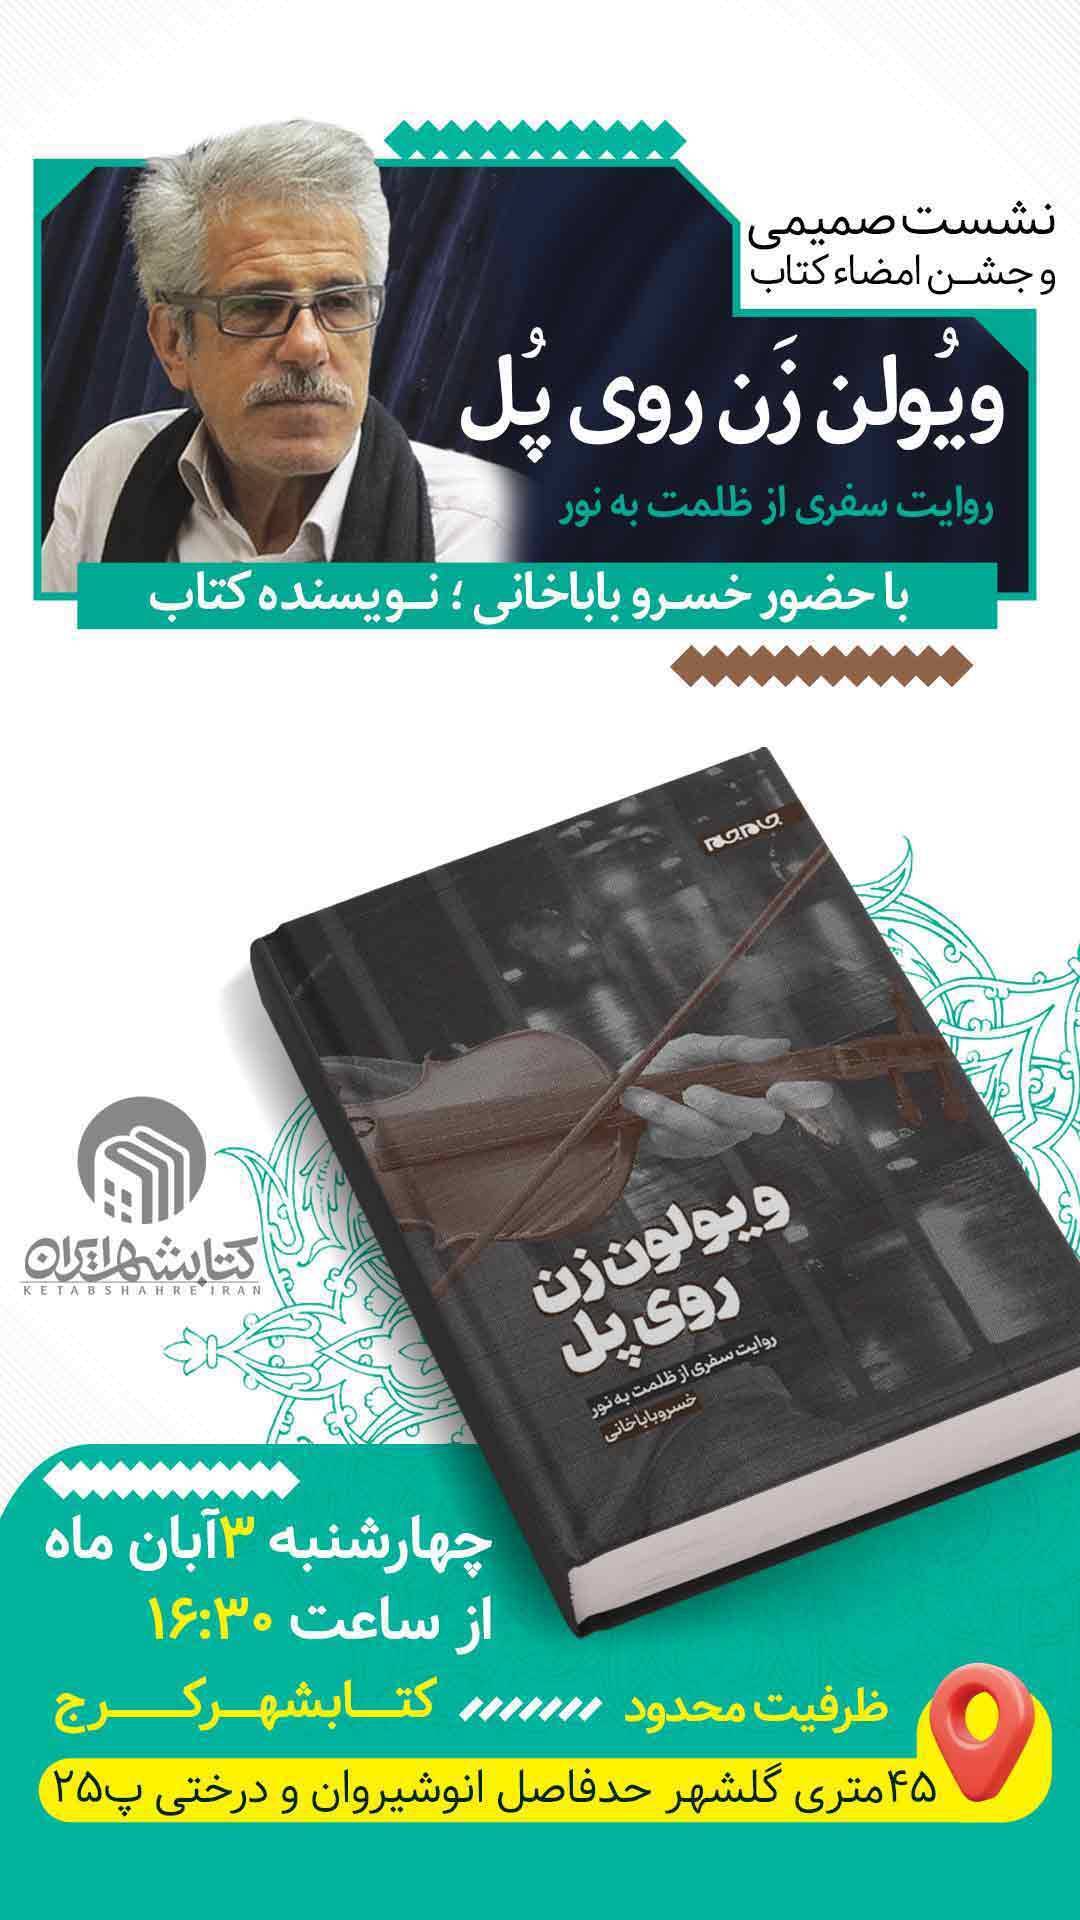 رونمایی از کتاب جدید خسرو باباخانی در کتابشهر ایران